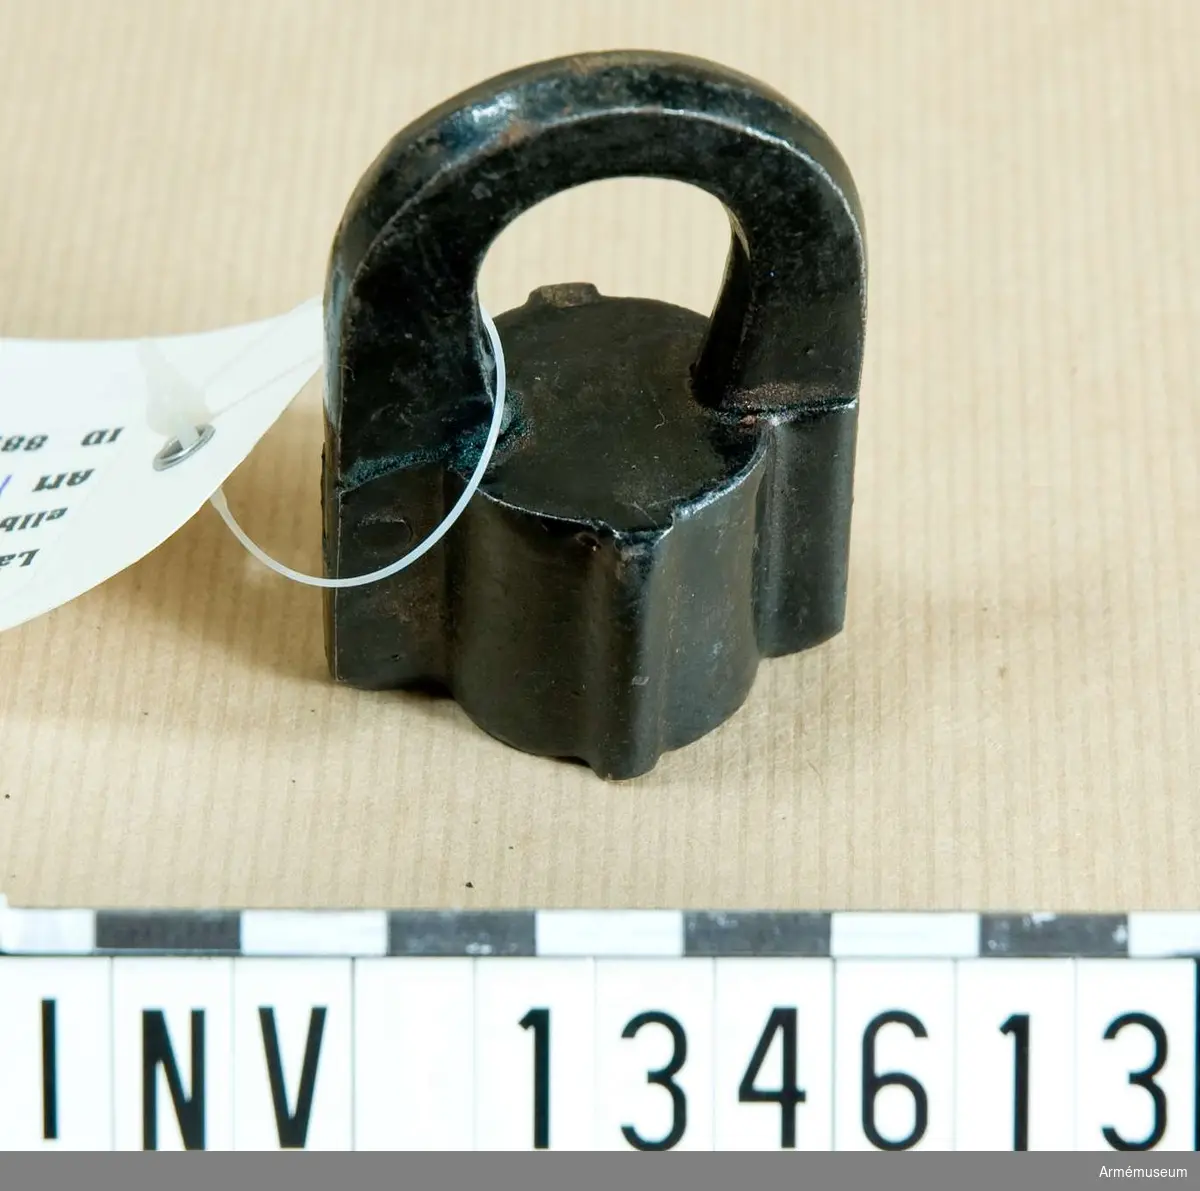 Polhemslås av järn, svartlackerat.
Hänglåset är låst och saknar nyckel. Märkt "F.A. Hellberg 57".